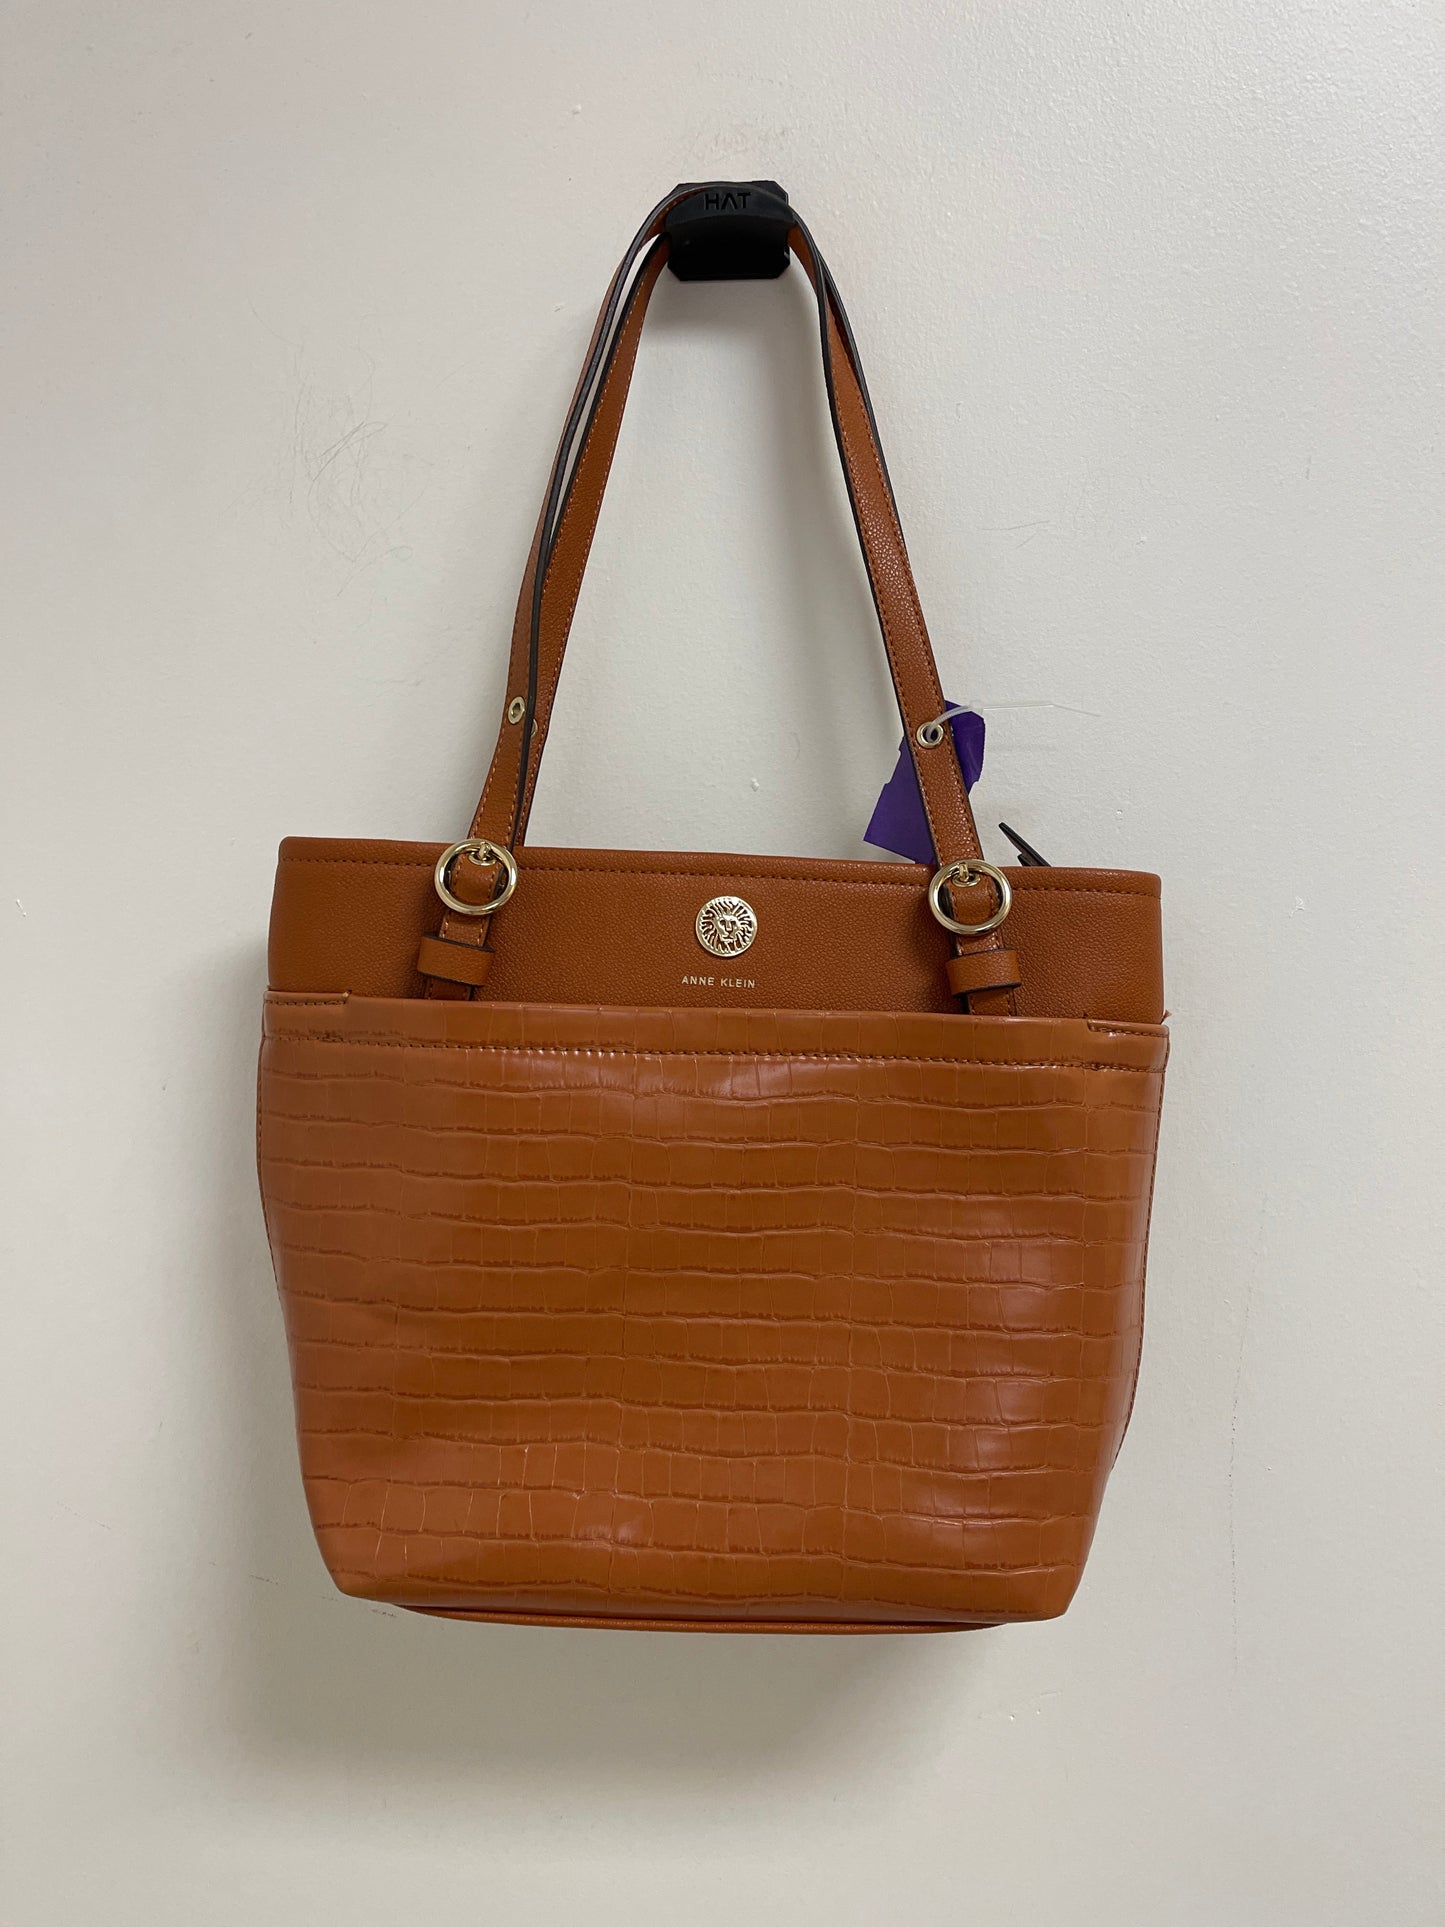 Handbag Anne Klein, Size Medium